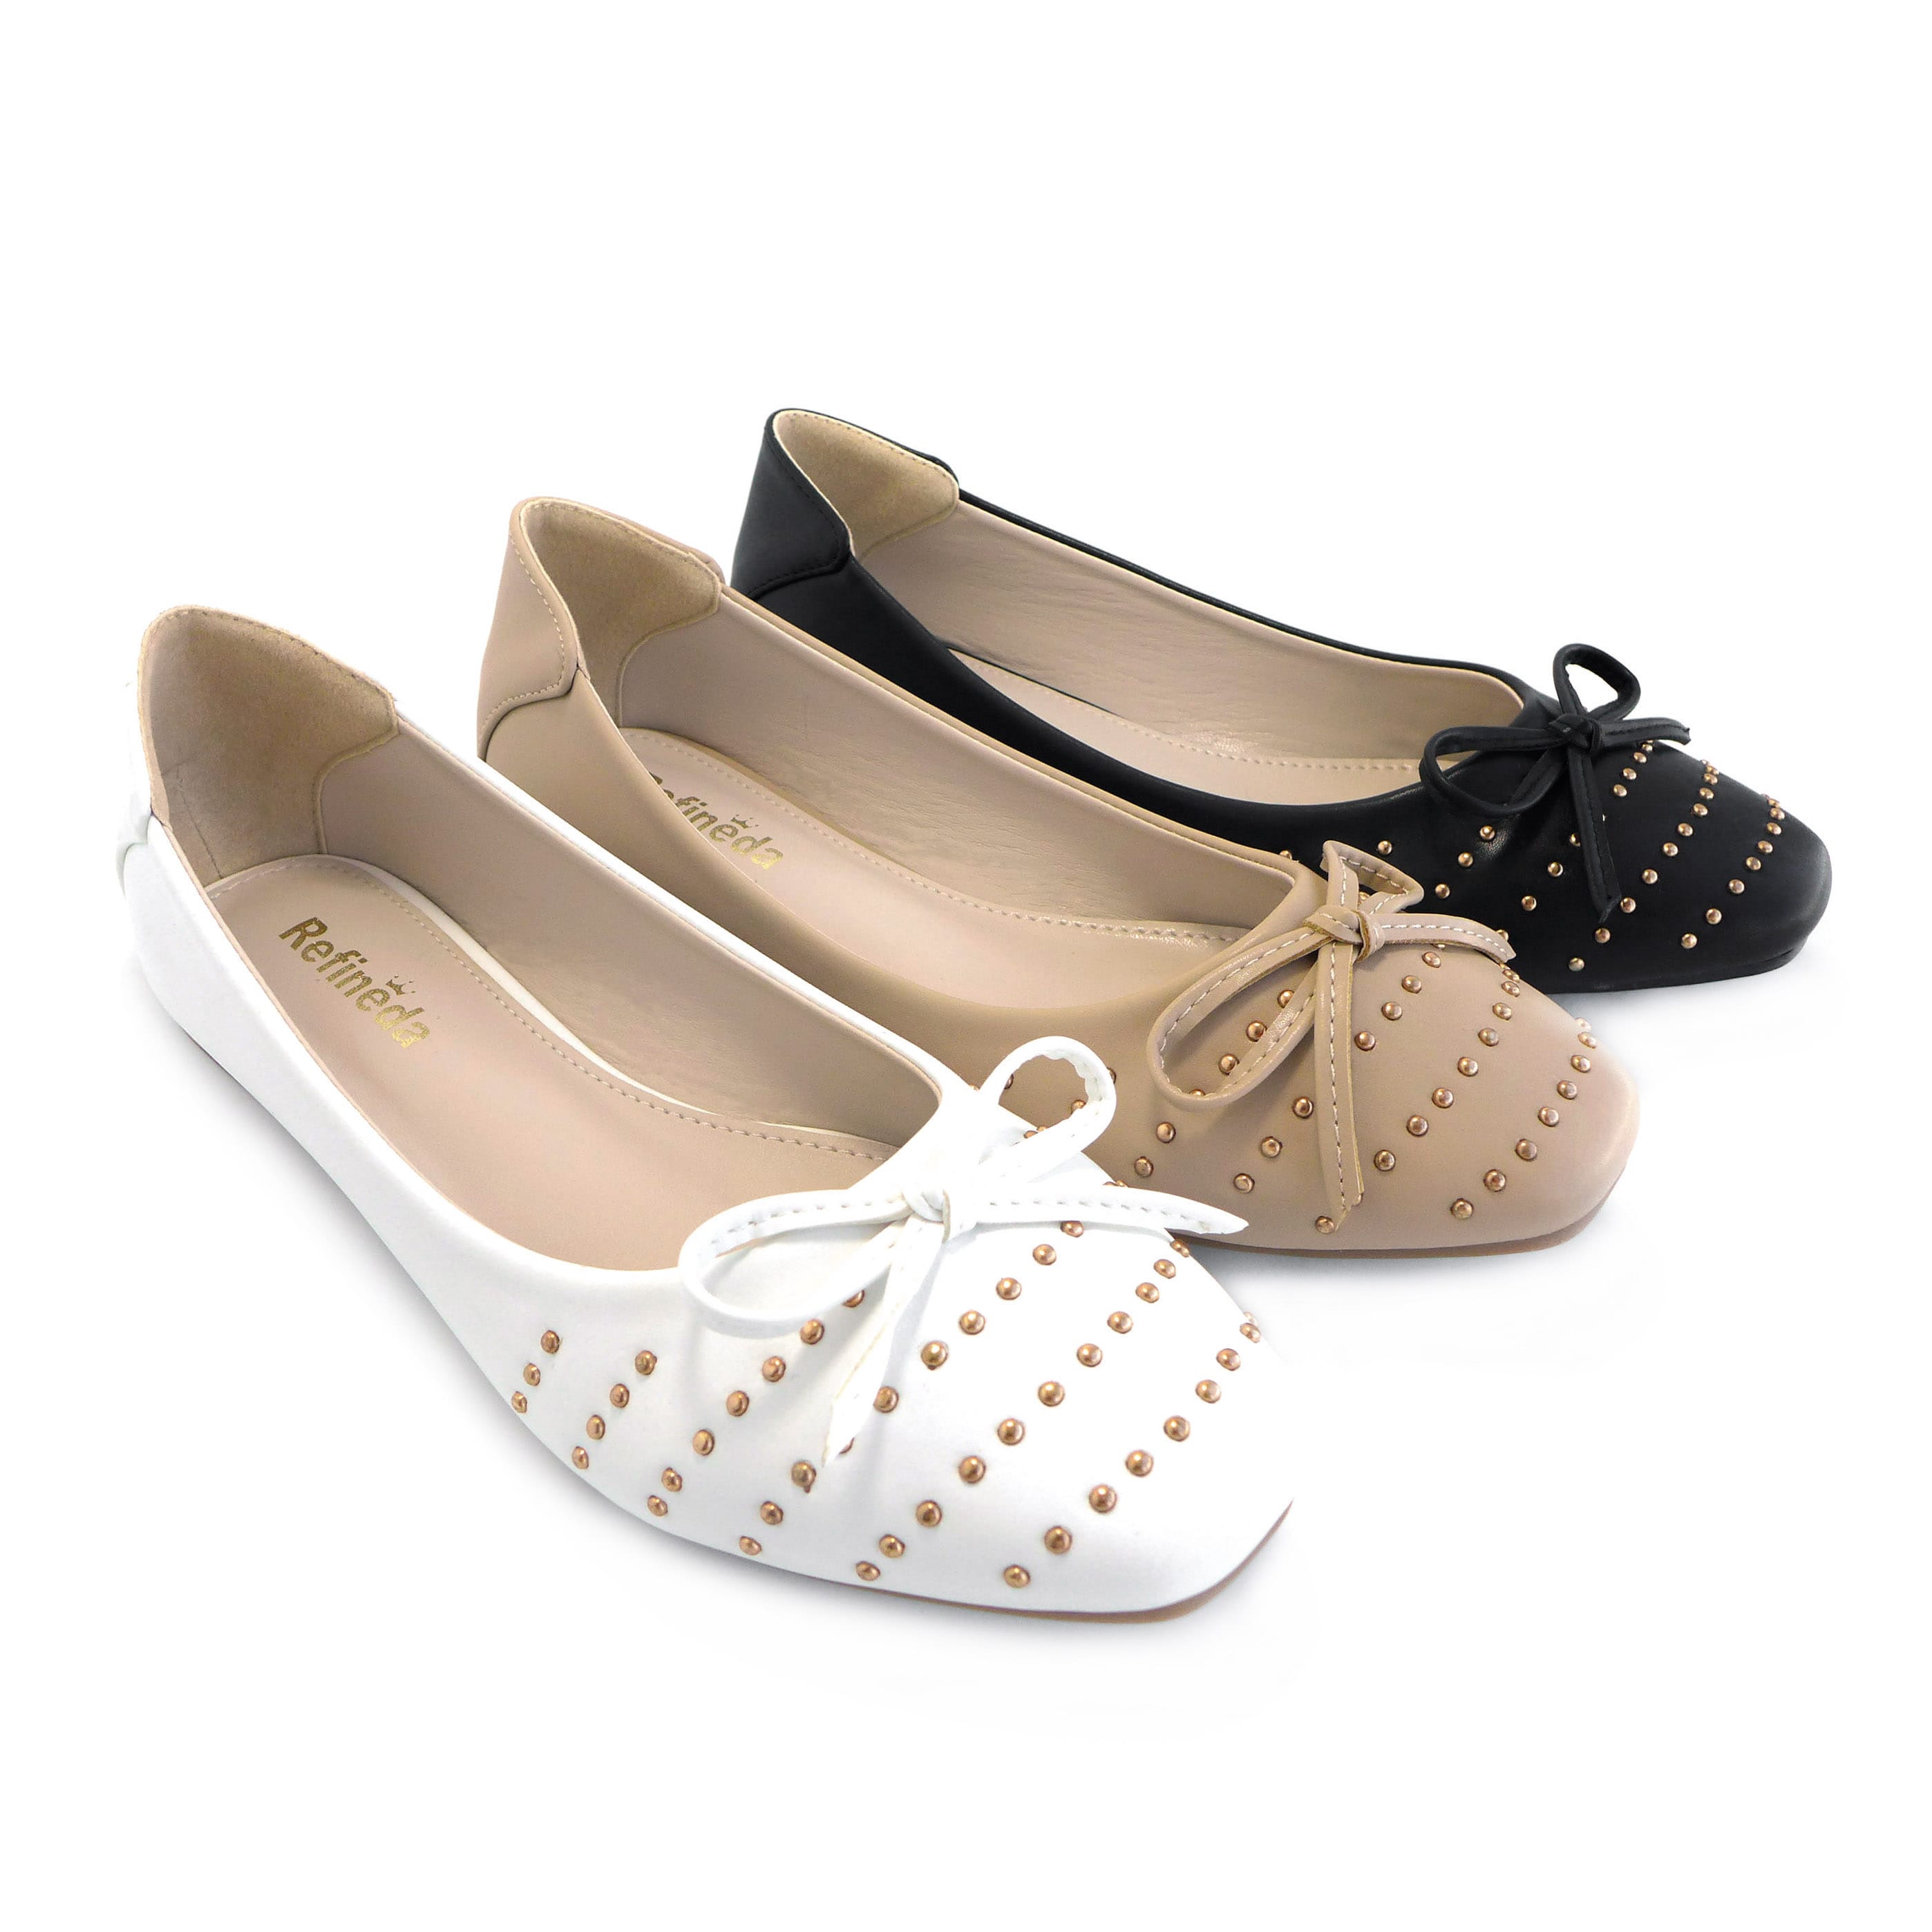 Pantofi Refineda pentru femei, cu talpă simplă, cu balerină